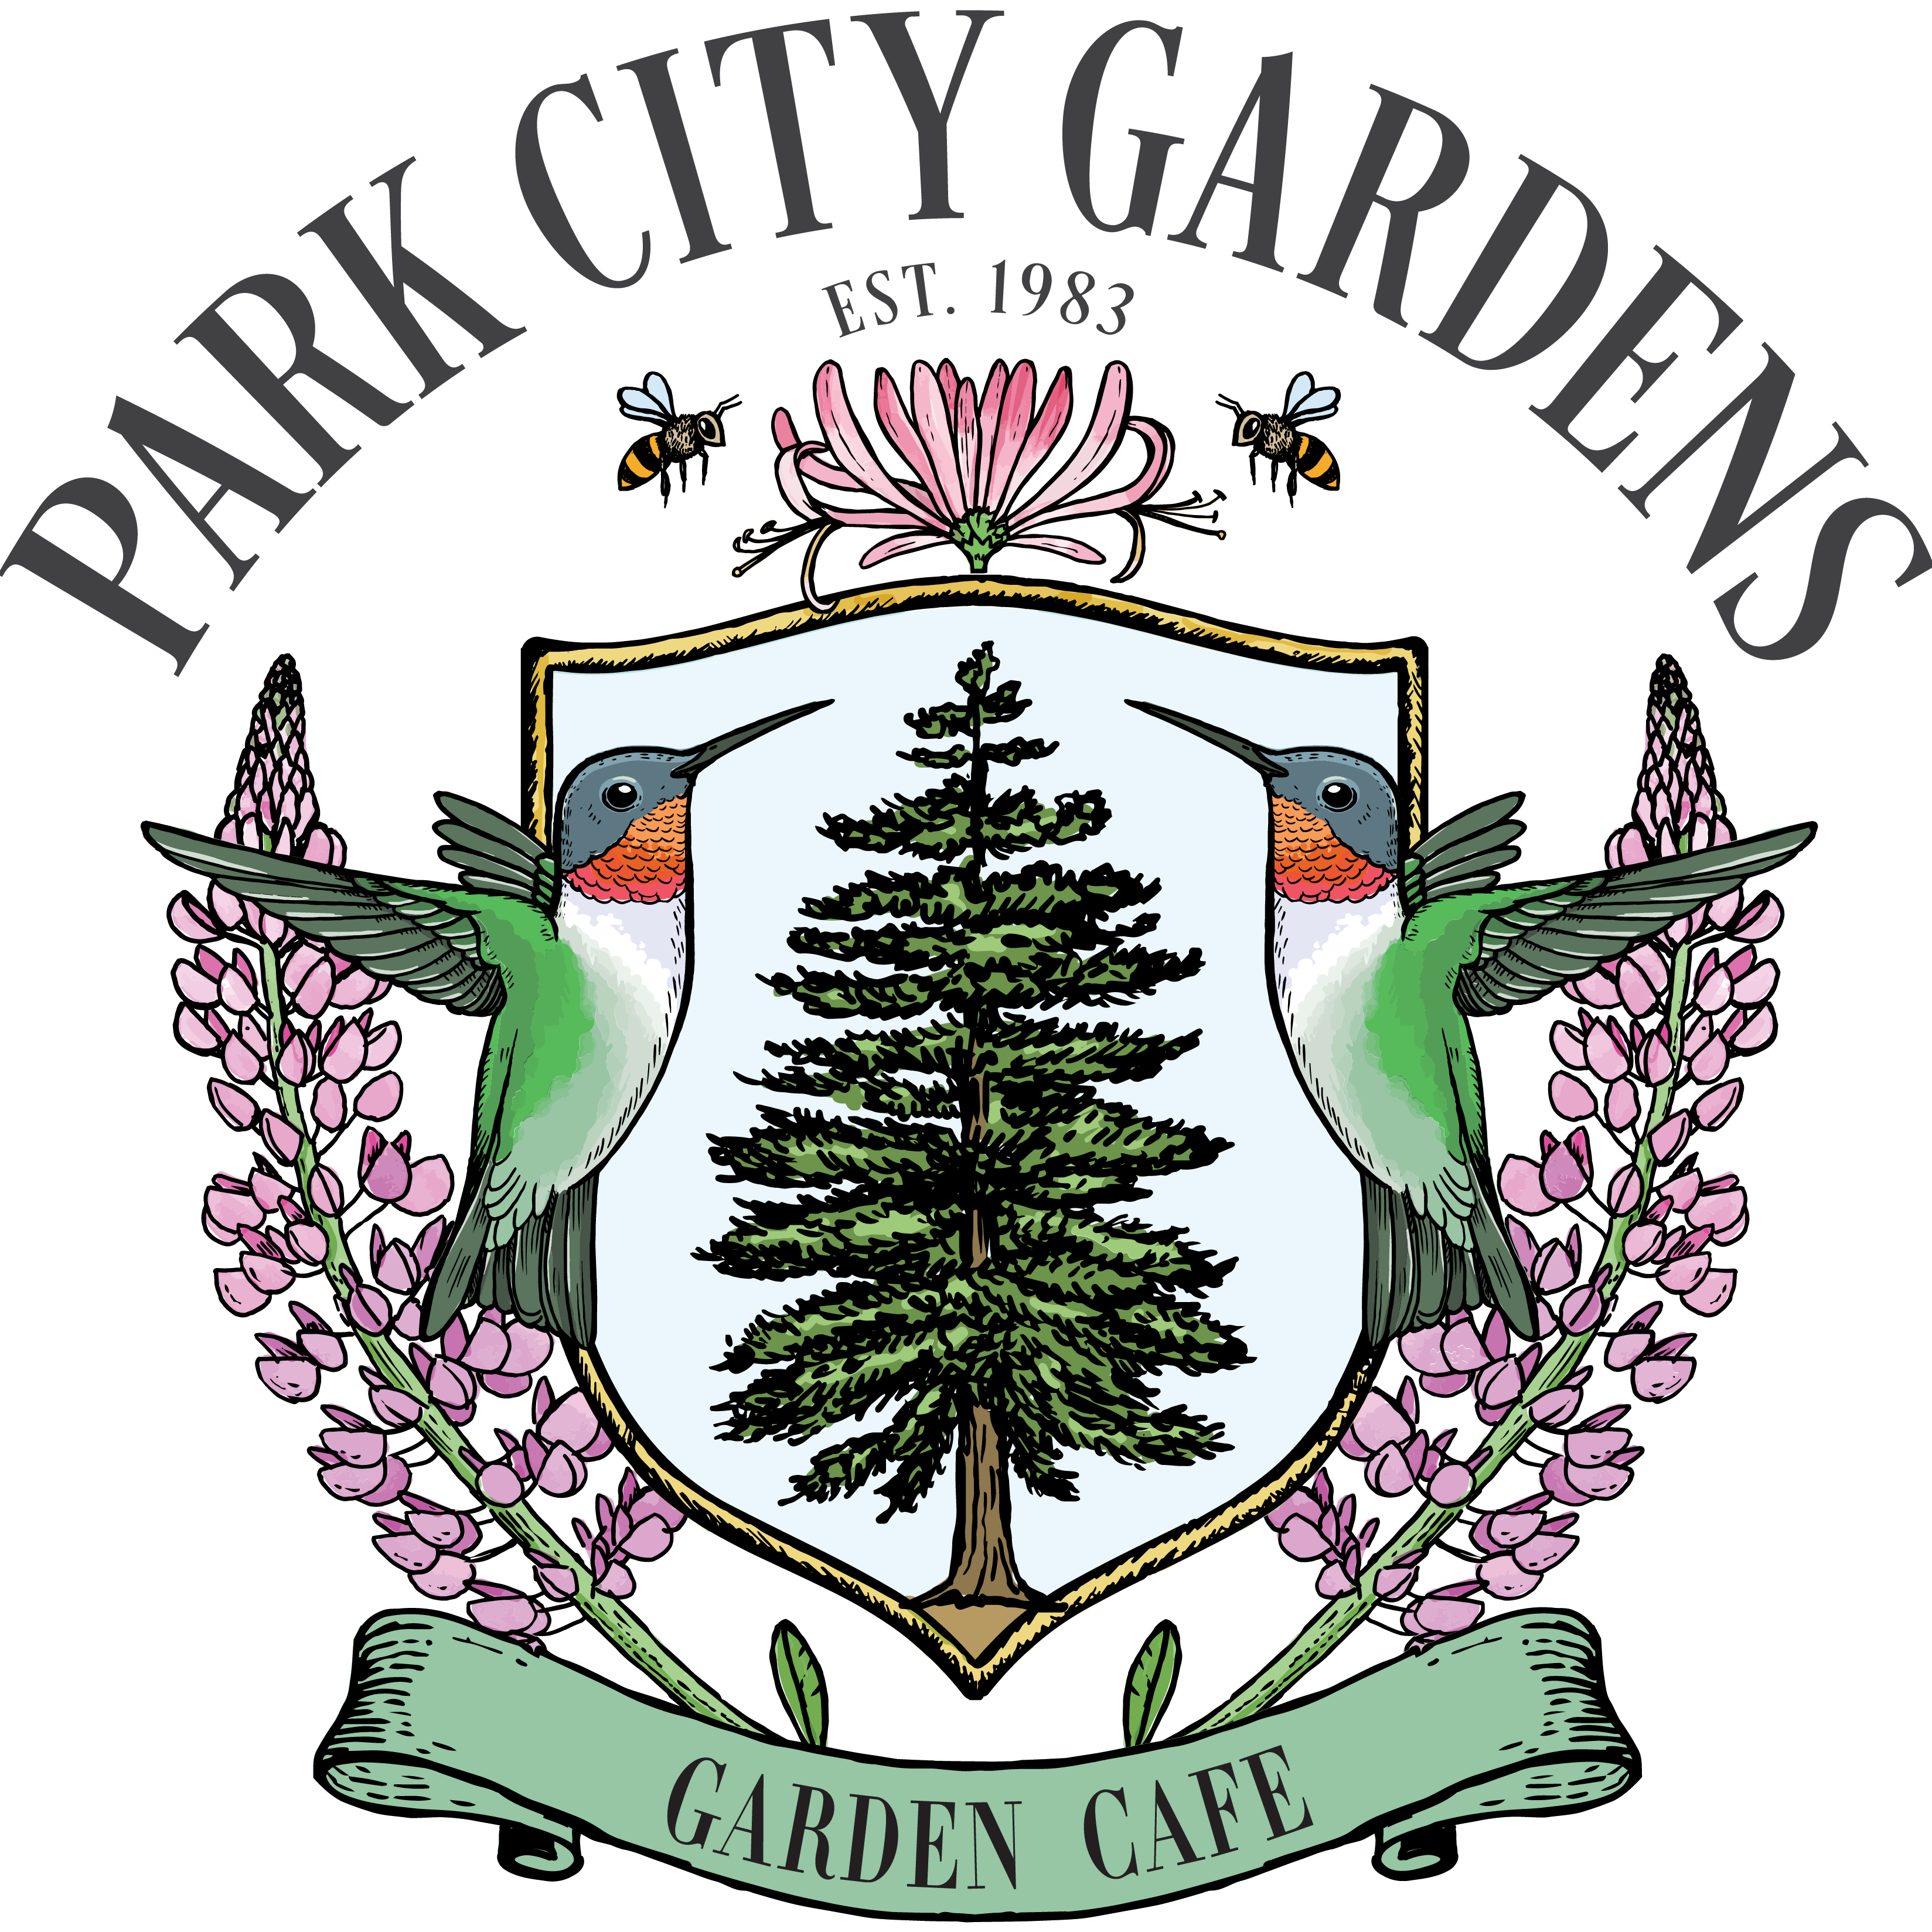 Park City Gardens Cafe Logo 